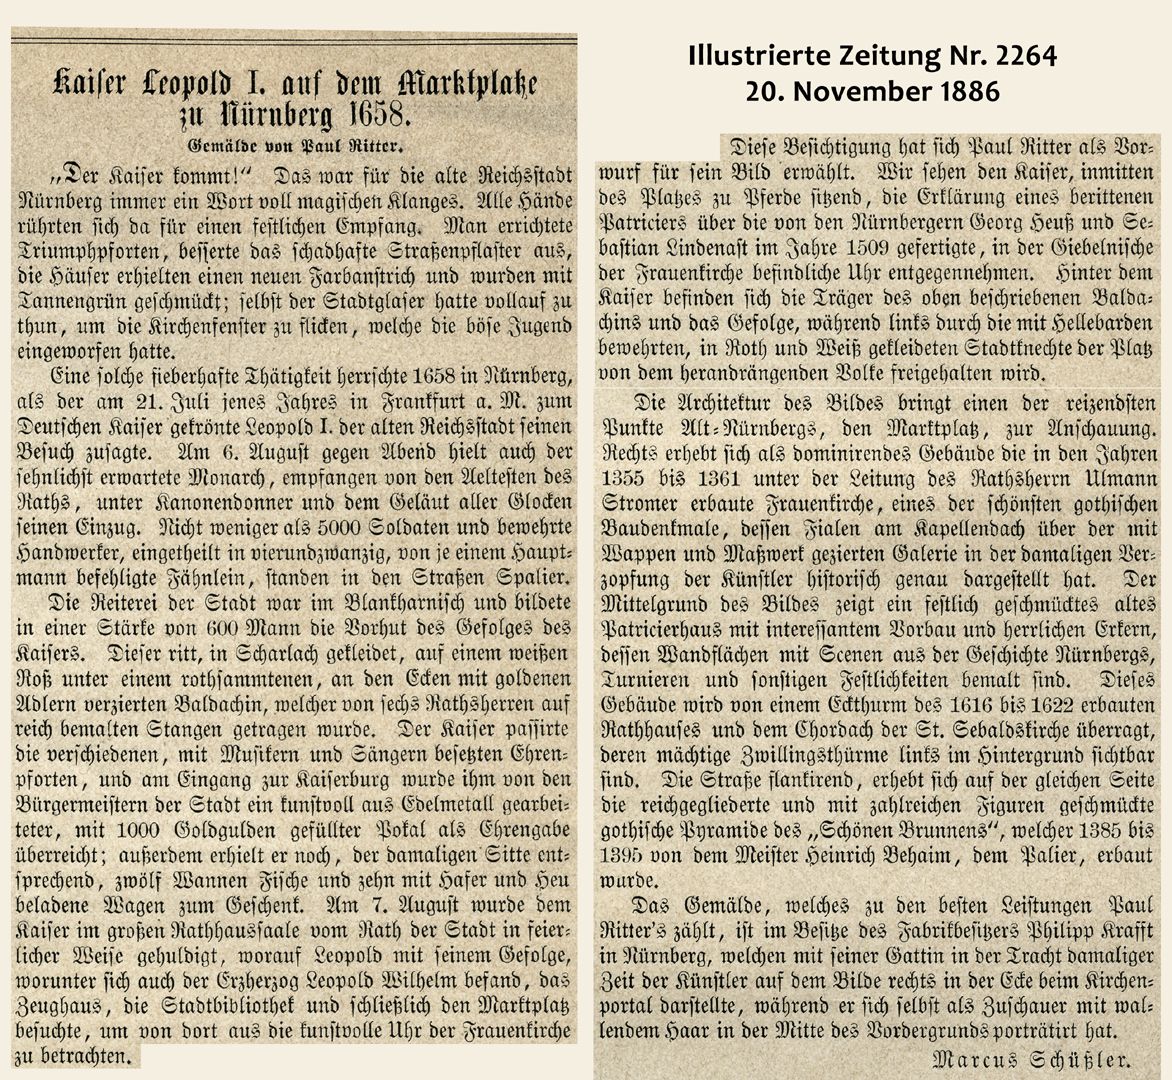 Marktplatz in Nürnberg mit Einzug Kaiser Leopolds 1658 Beschreibung zum Holzstich in der Illustrierten Zeitung 1886